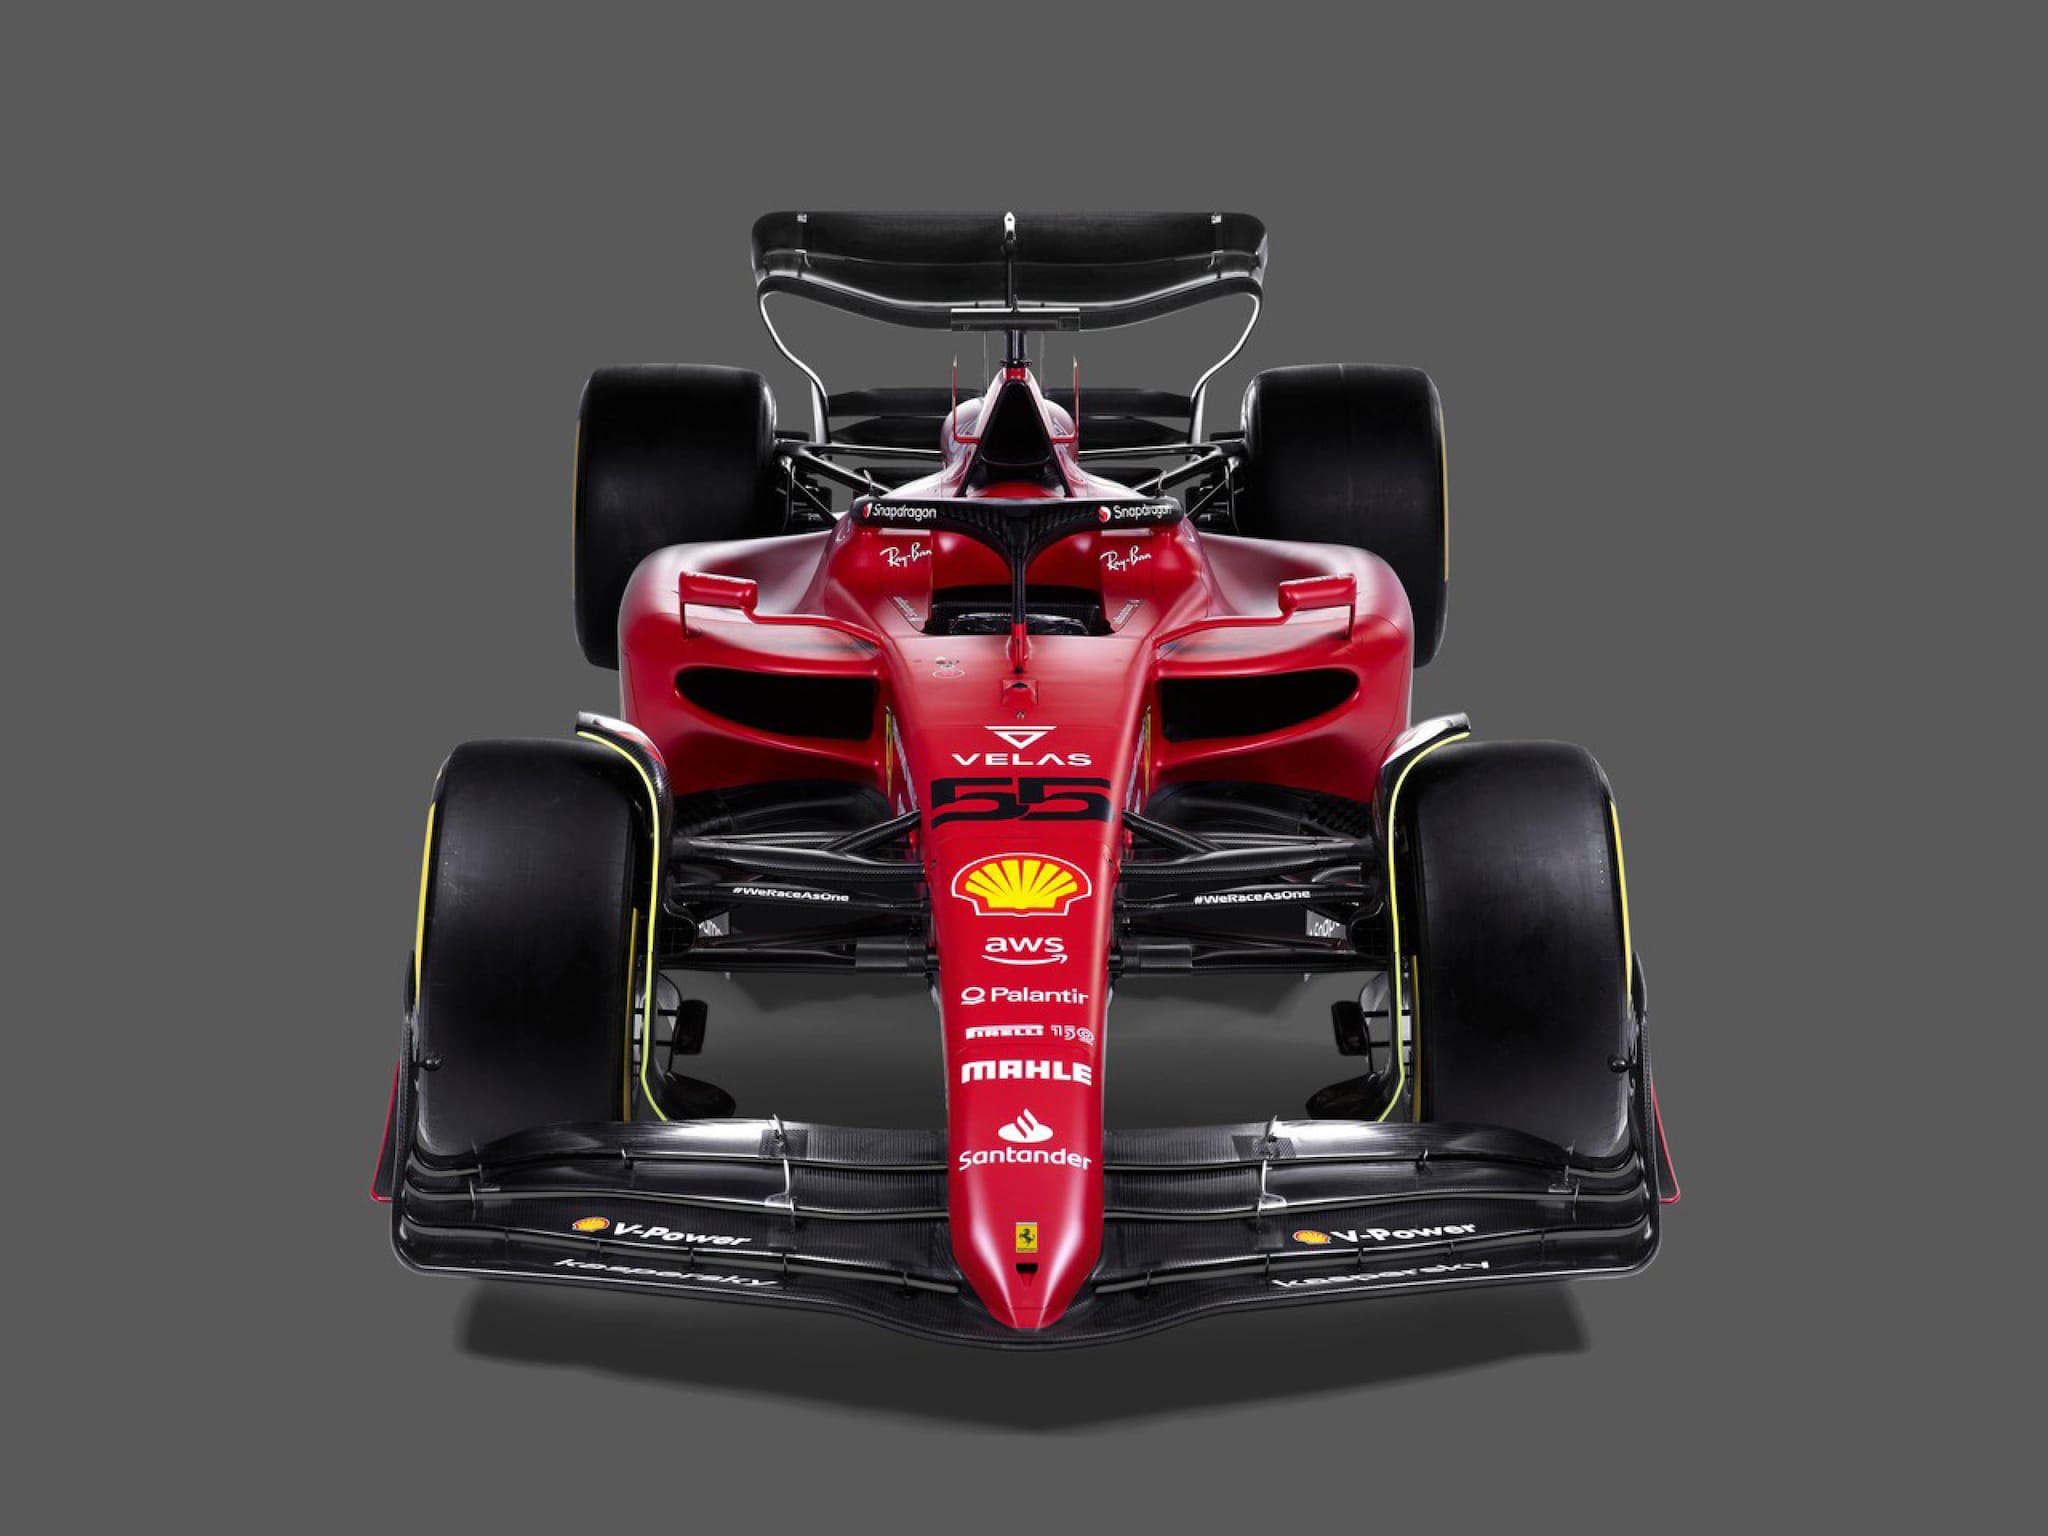 Svelata a Maranello,con una diretta streaming, la nuova F1-75, la monoposto con cui la Ferrari correrà il Mondiale di Formula 1 2022, Maranello (Modena). (ANSA / Twitter Gianluca D'Alessandro)